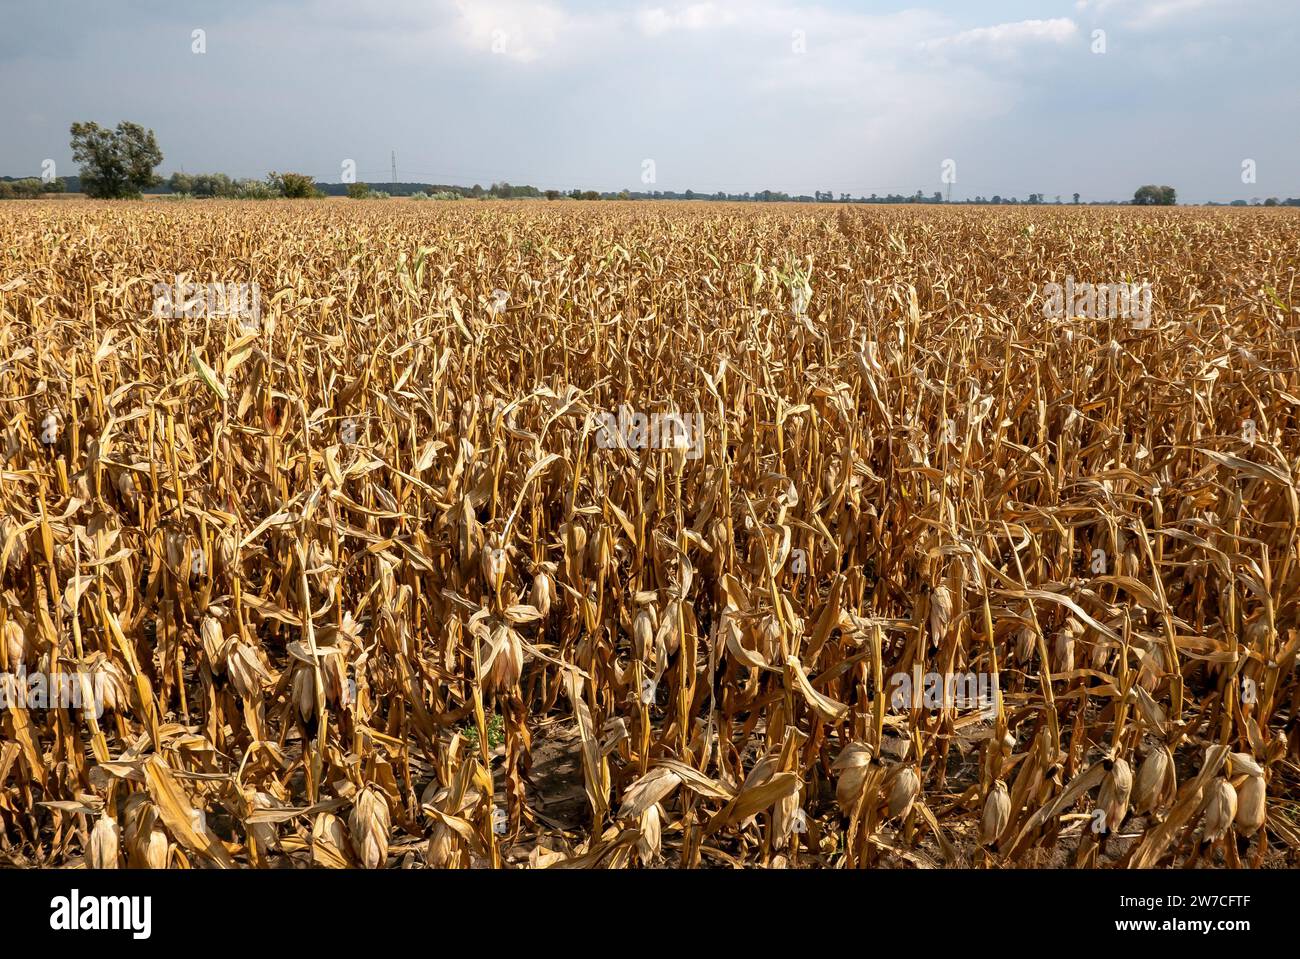 15.09.2018, Poland, Szewce, Wielkopolska - Dried out corn field after a summer with a long drought. 00A180915D117CAROEX.JPG [MODEL RELEASE: NOT APPLIC Stock Photo